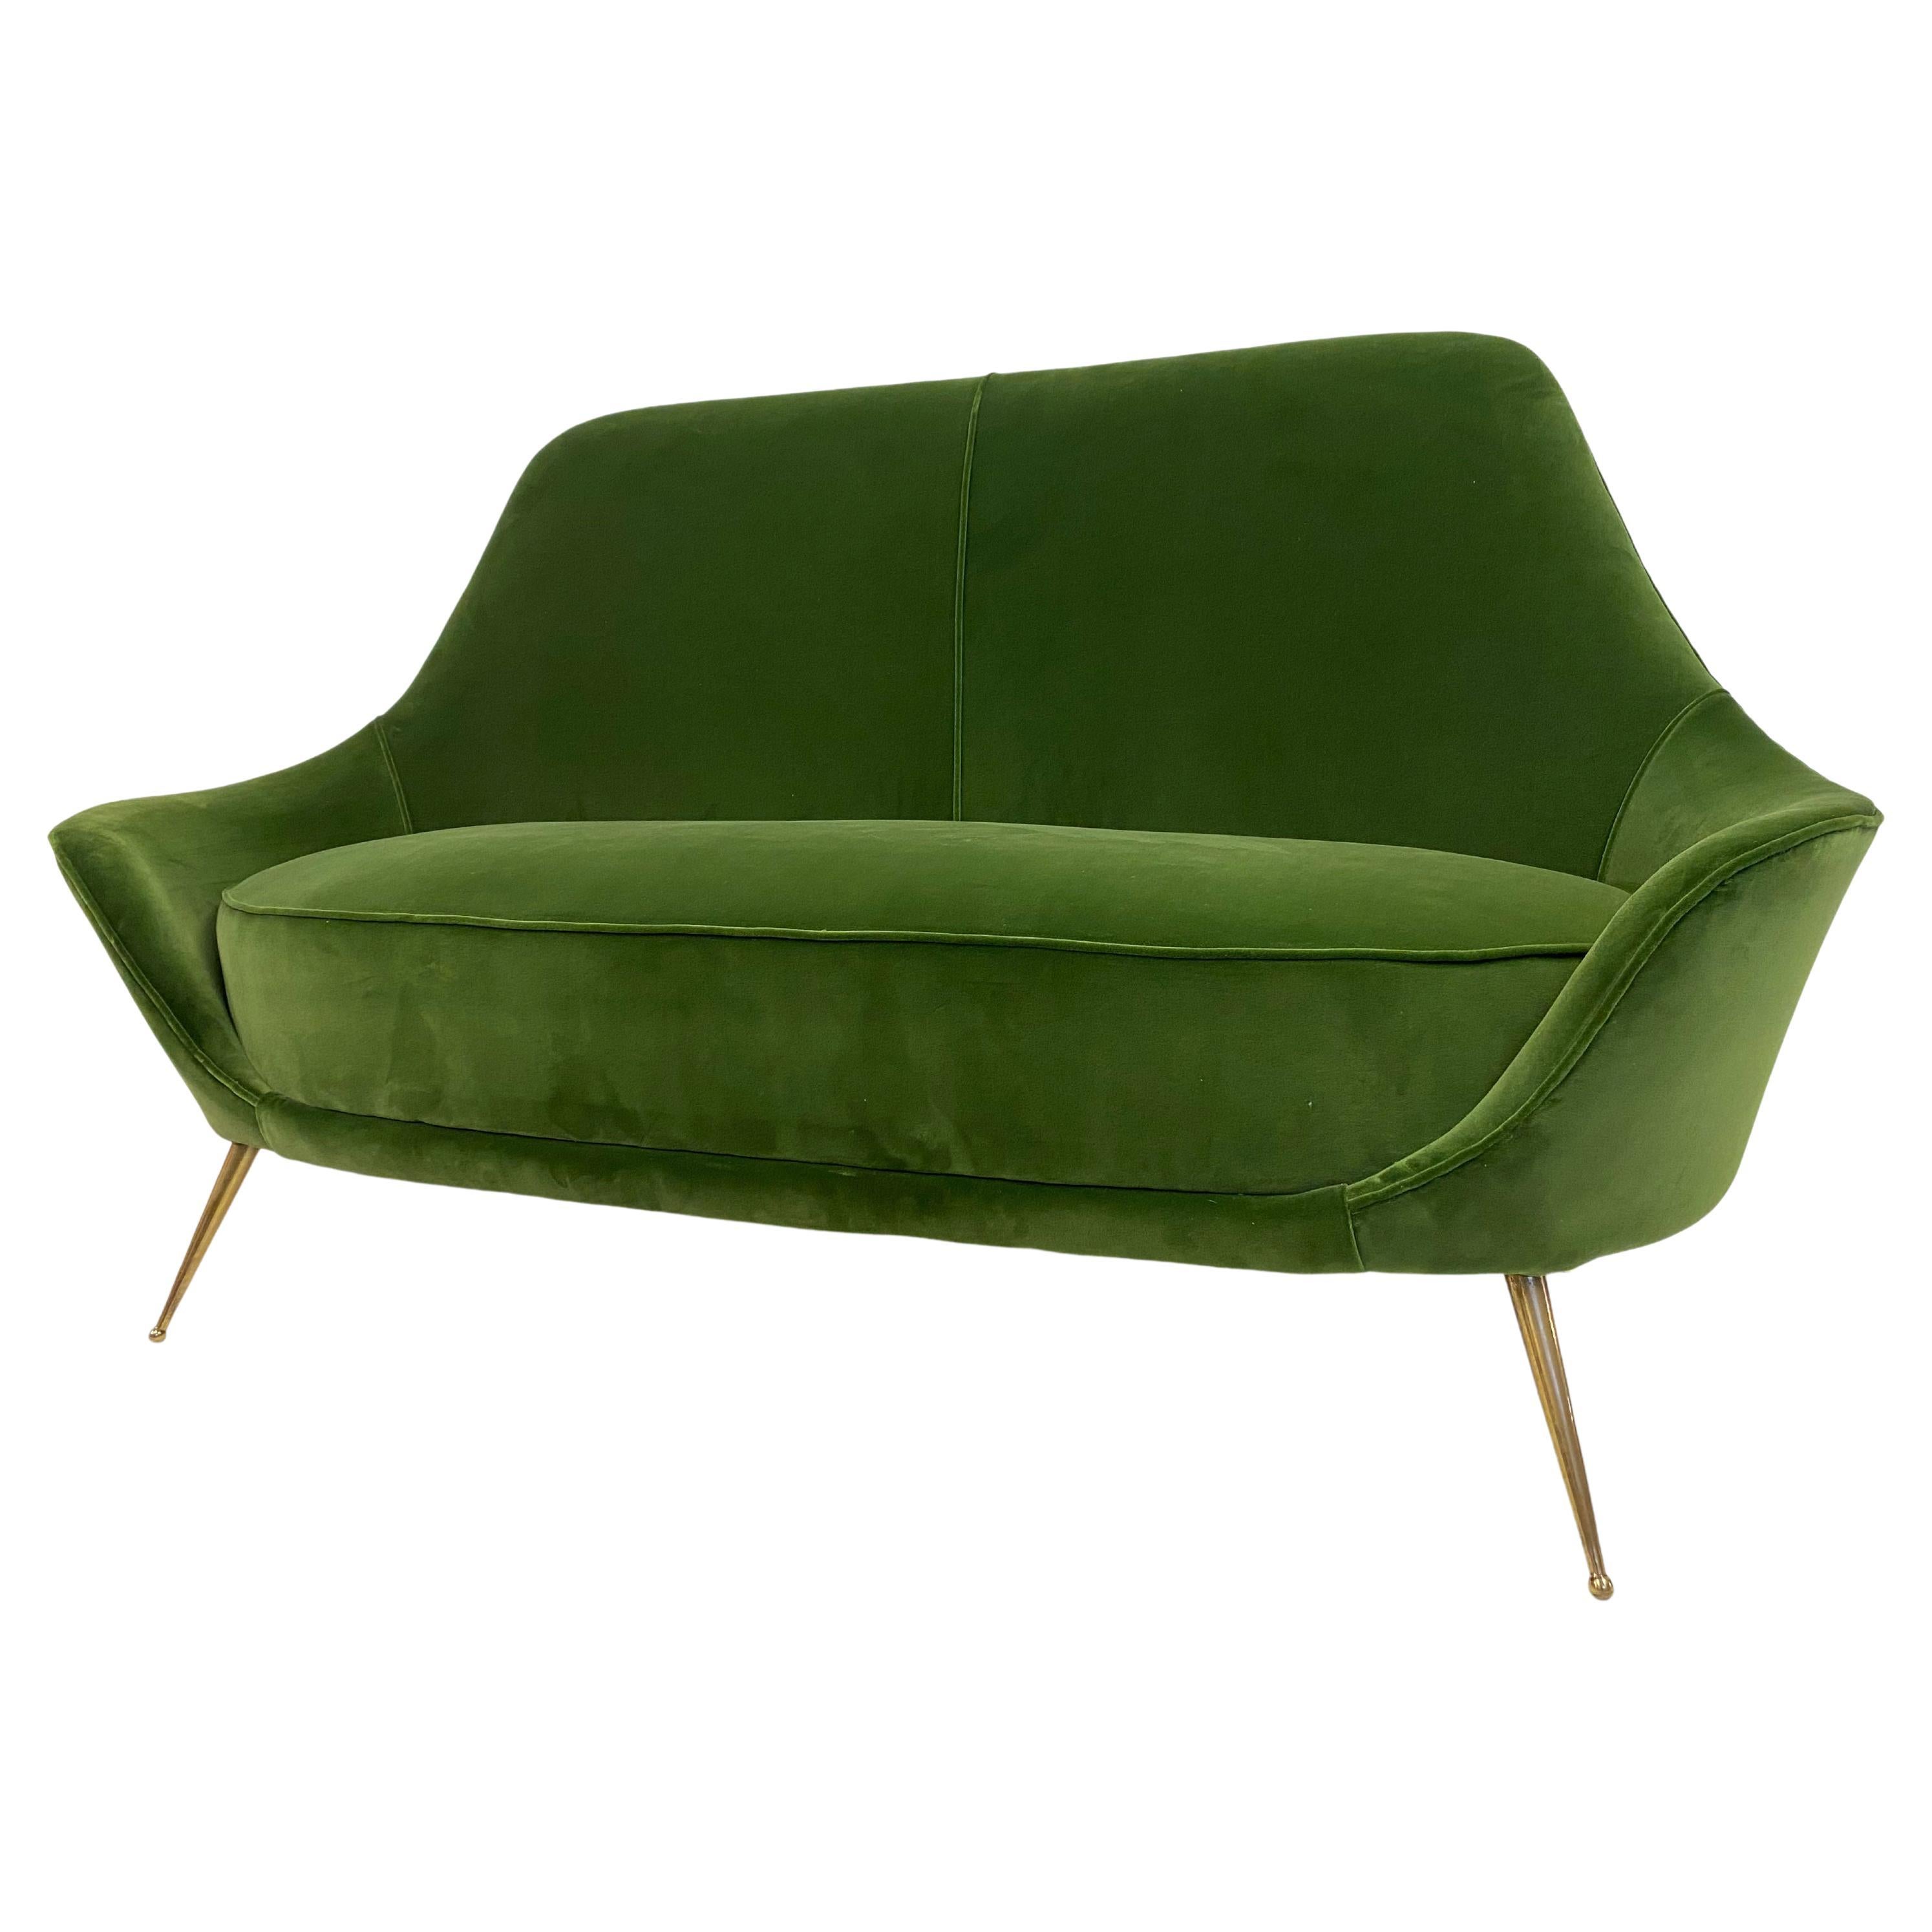 1960s Italian Sofa in Green Cotton Velvet